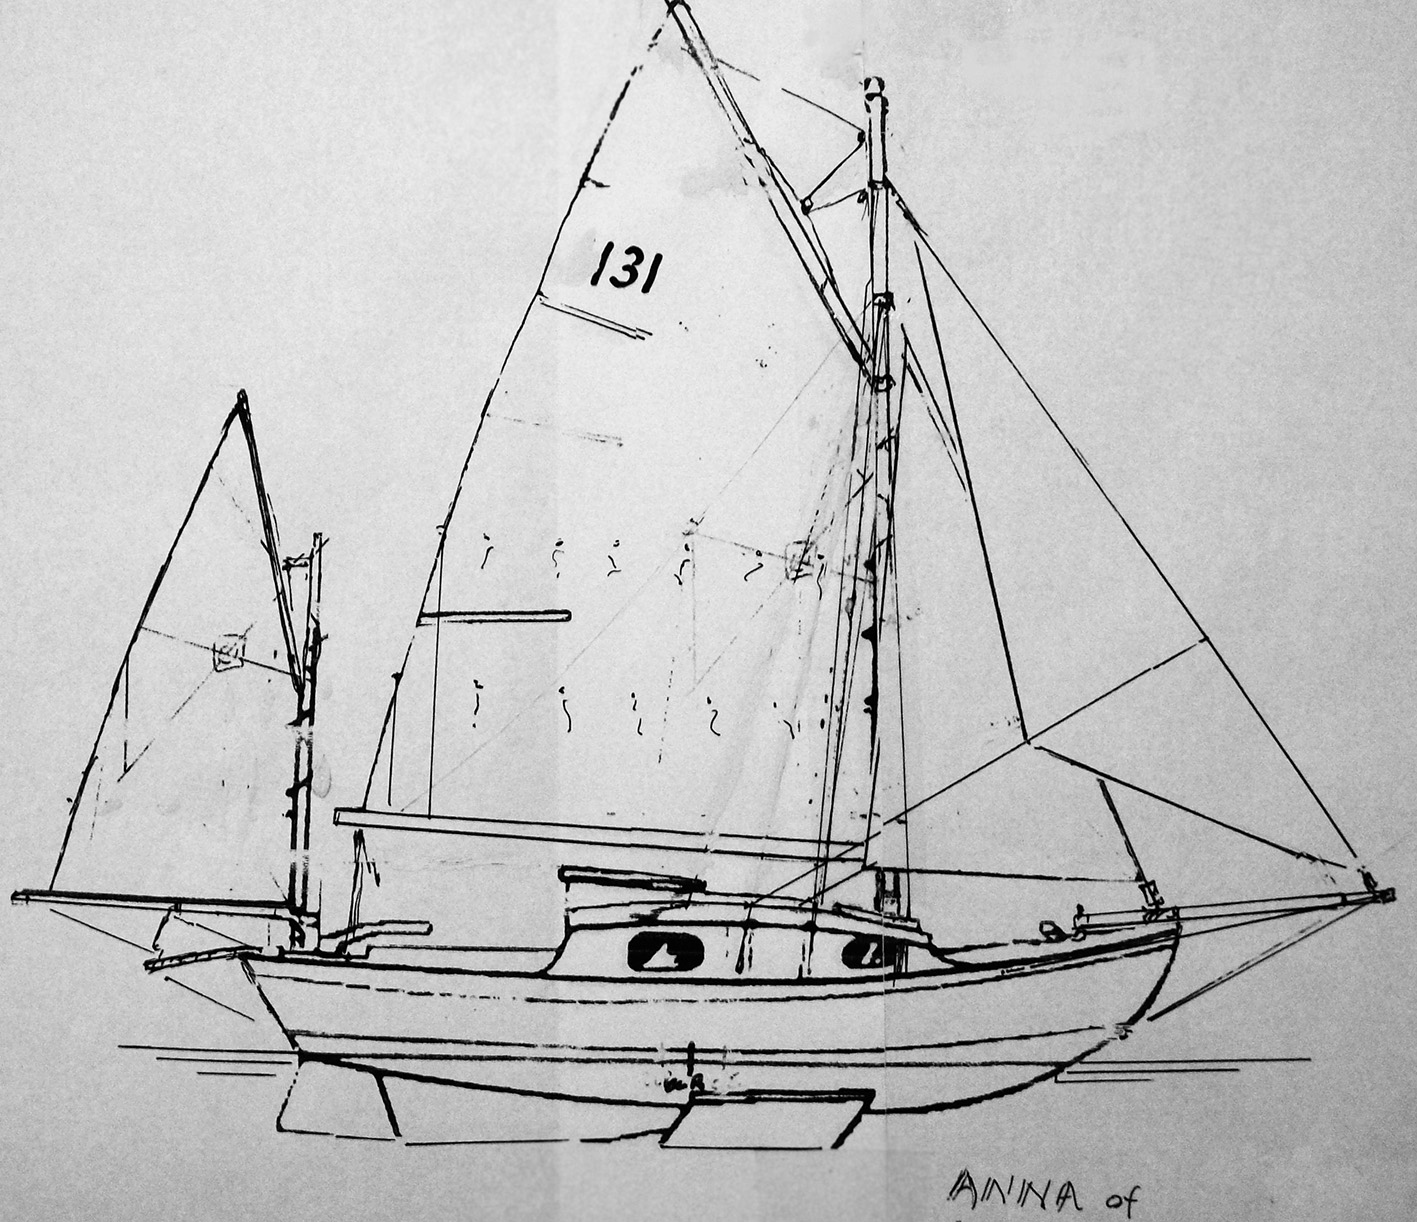 yawl rigged sailboat